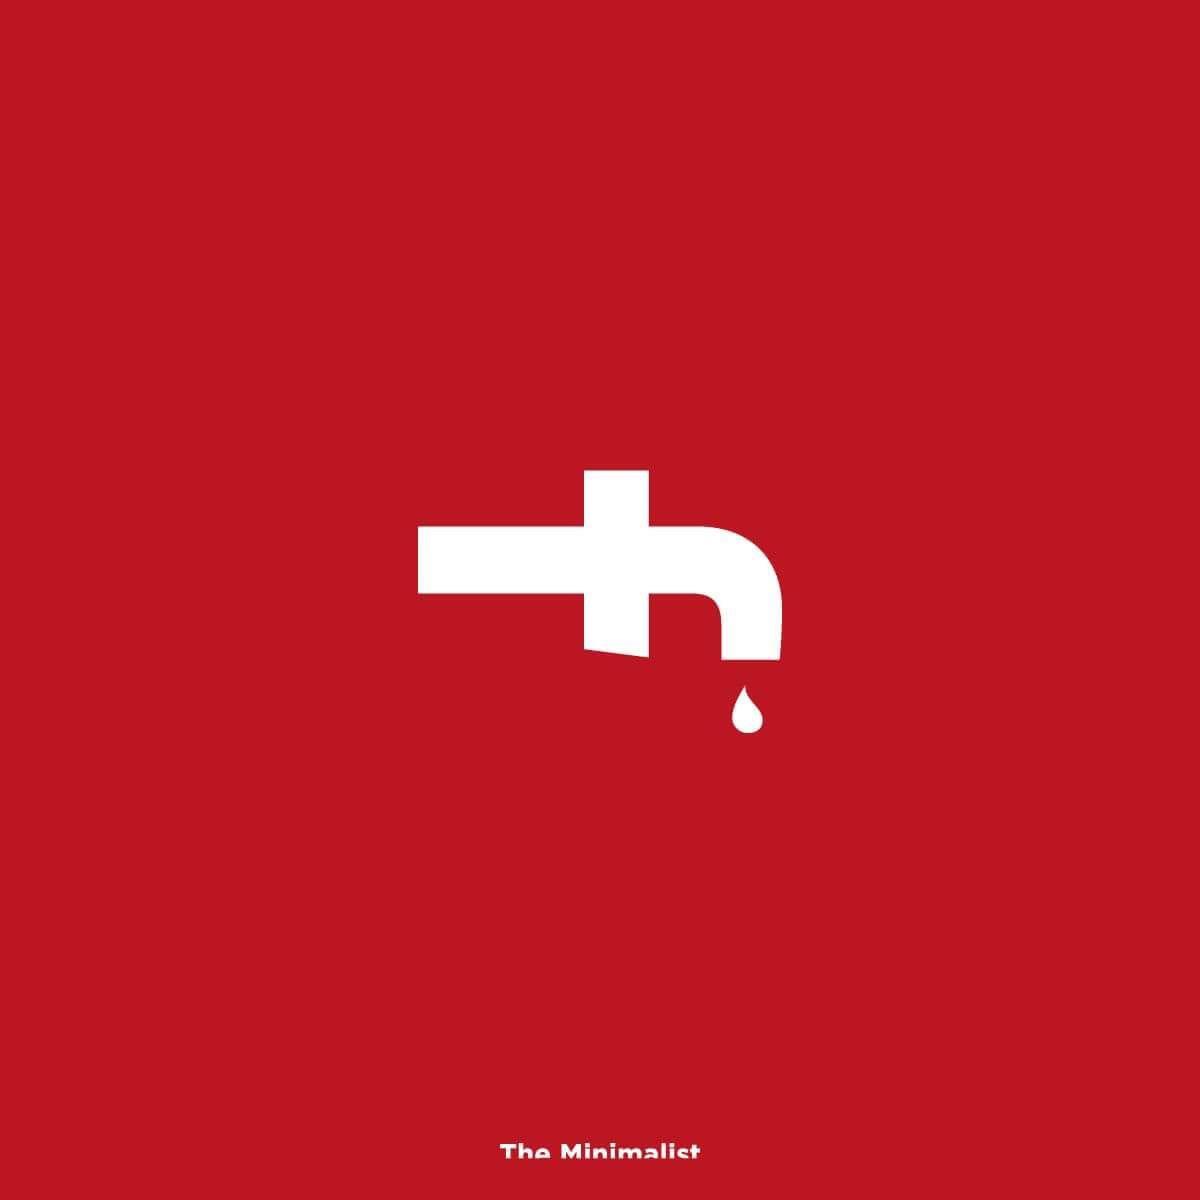 Facebook Funny Logo - New Facebook Logo after Data Leak : funny